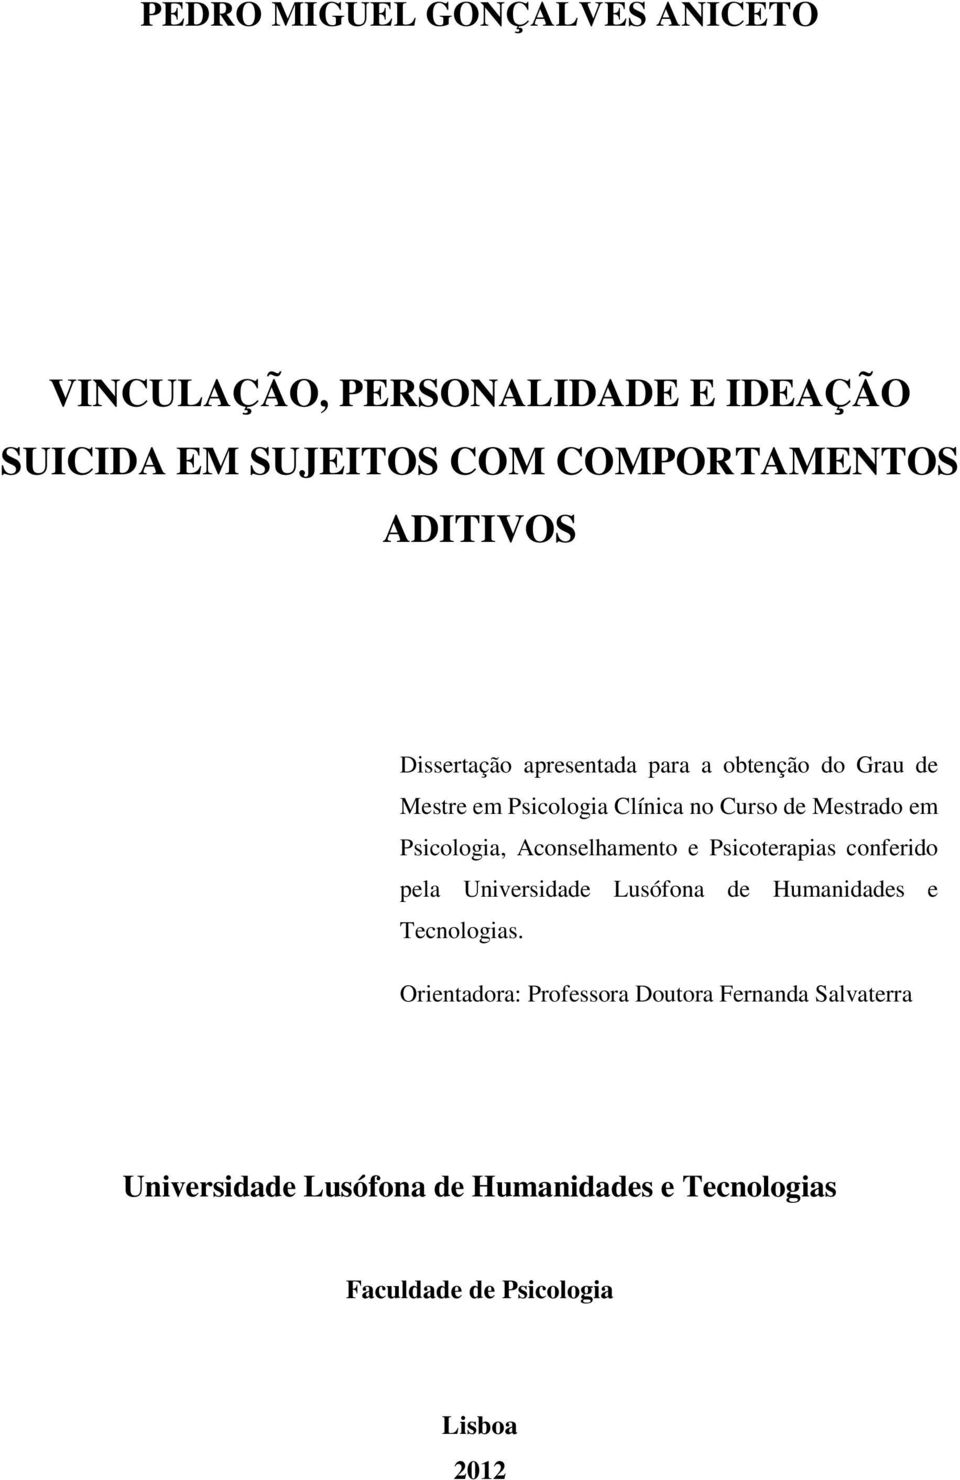 Aconselhamento e Psicoterapias conferido pela Universidade Lusófona de Humanidades e Tecnologias.